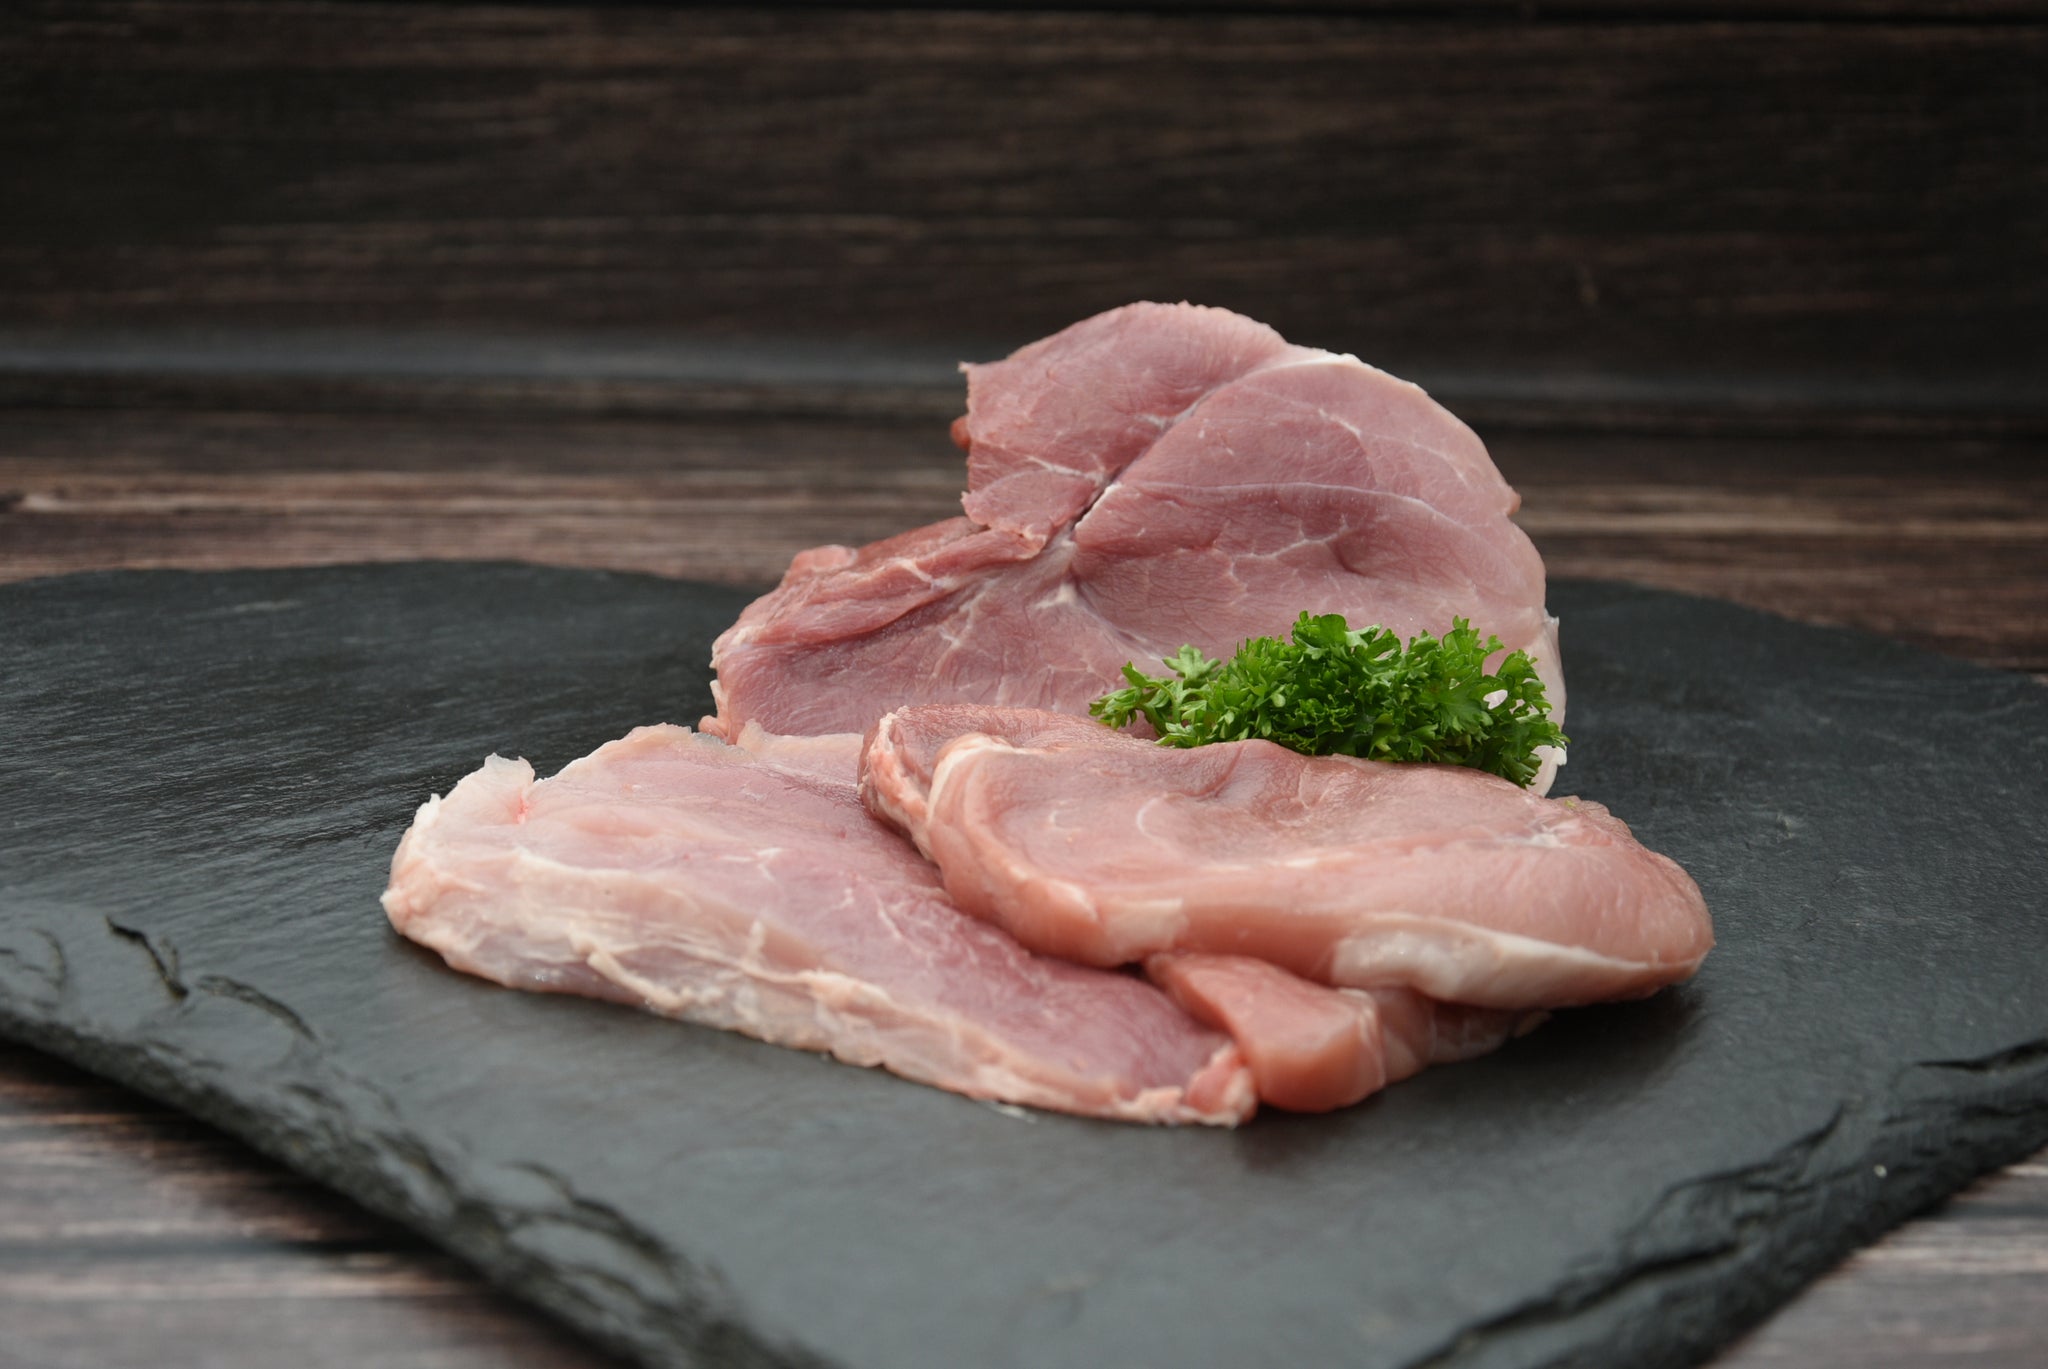 Schweineschnitzel, 150g Portion, Preis pro kg 24,90€ - Anzahlung